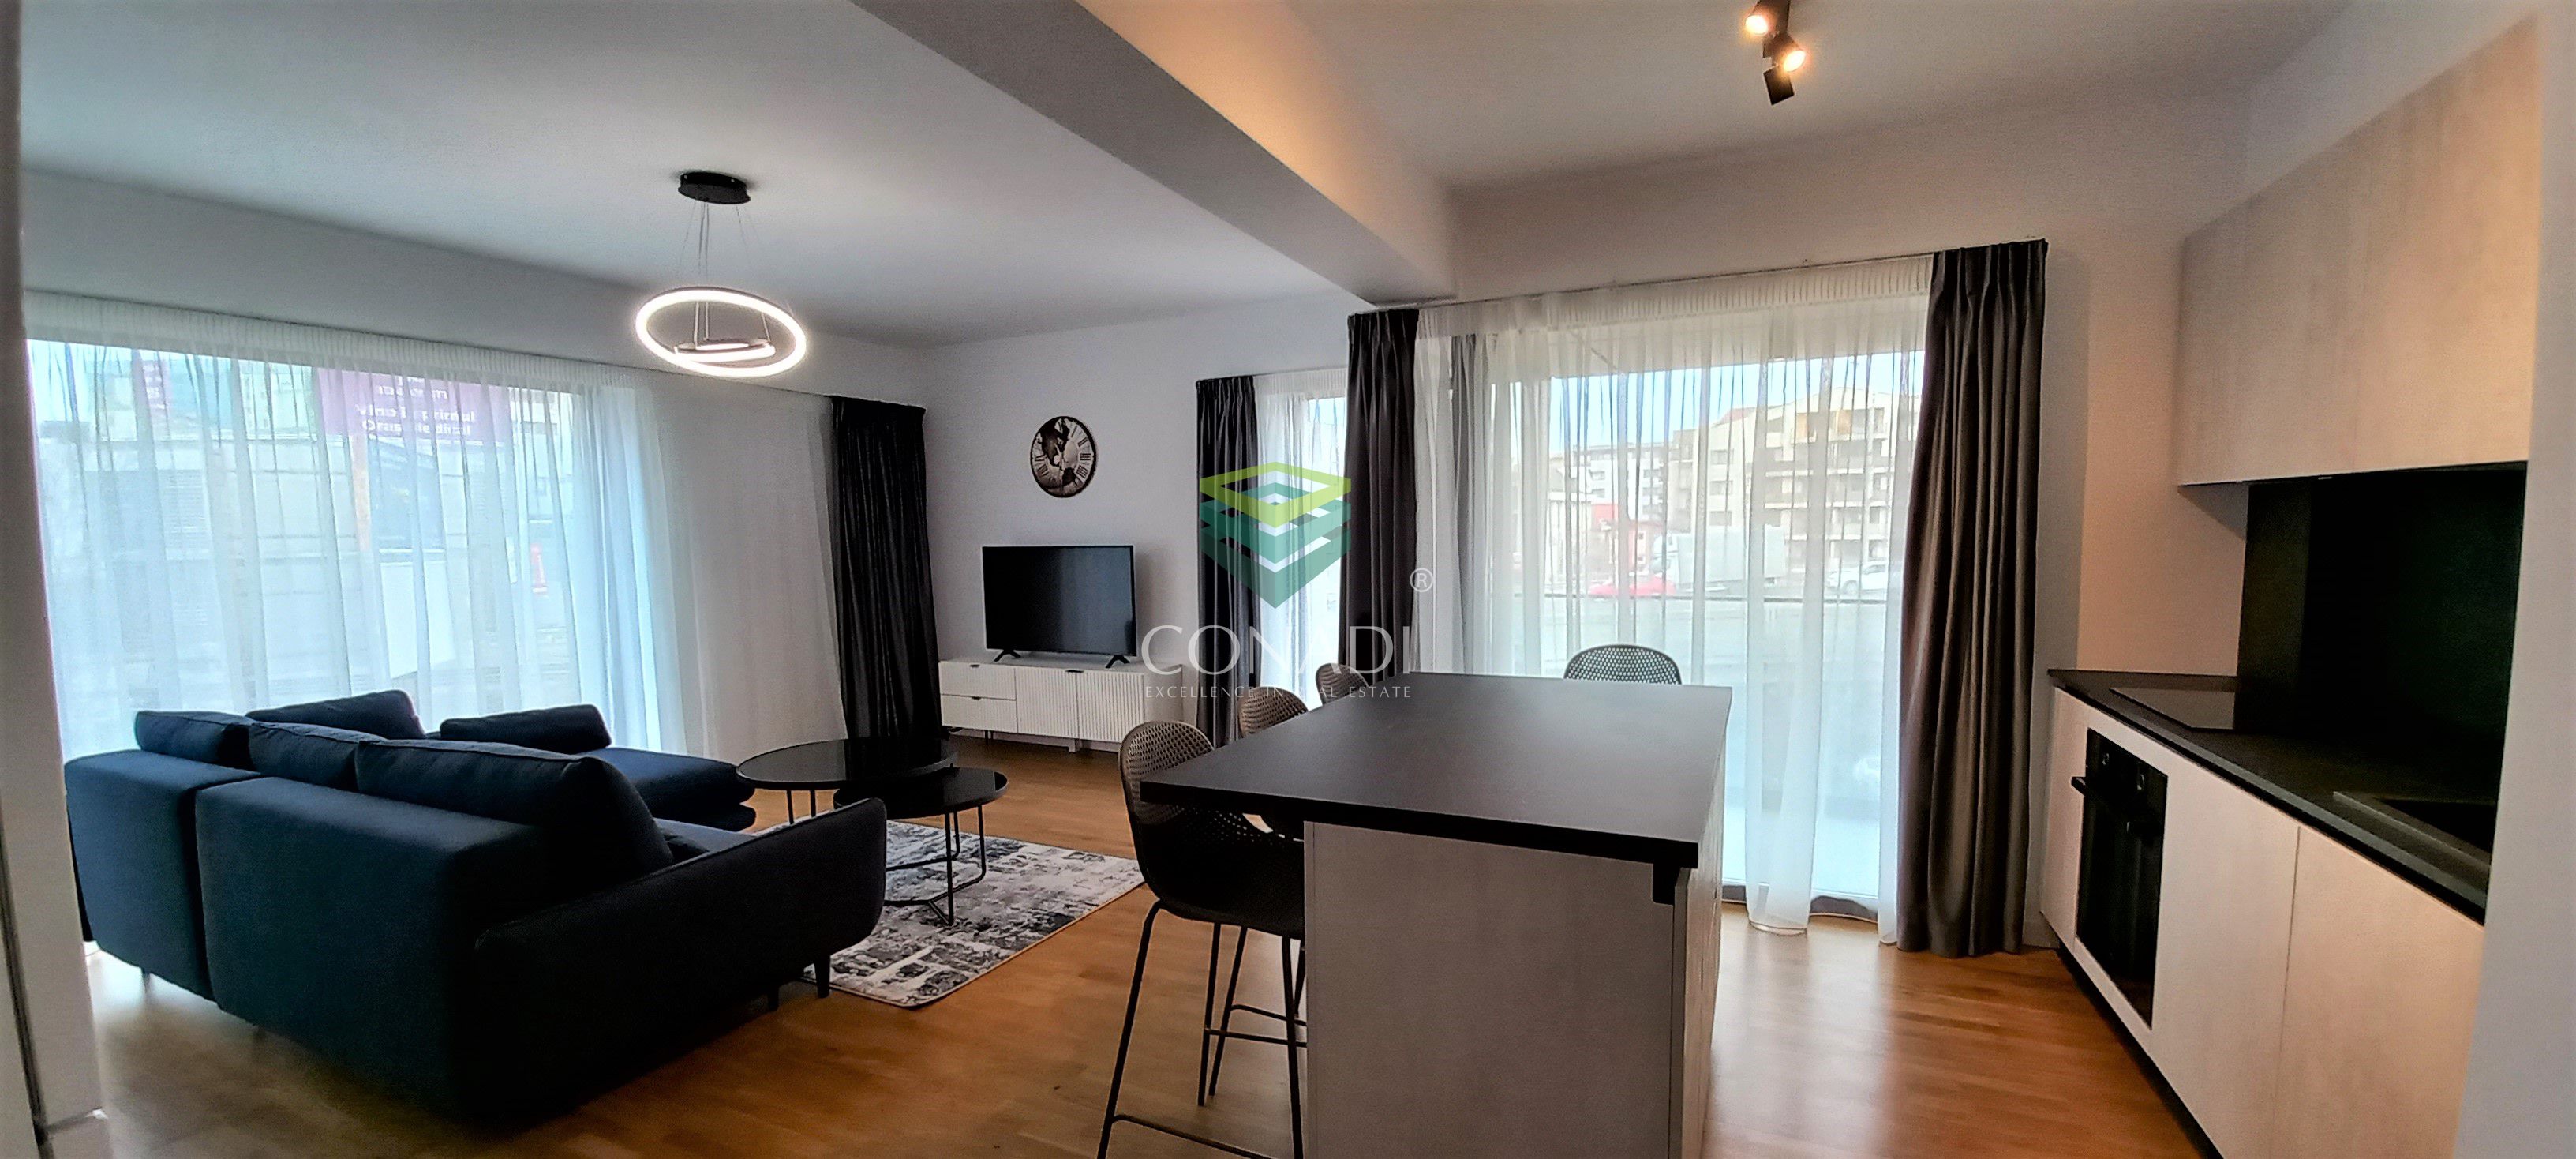 Apartament 2 camere Inchiriere - Herastrau